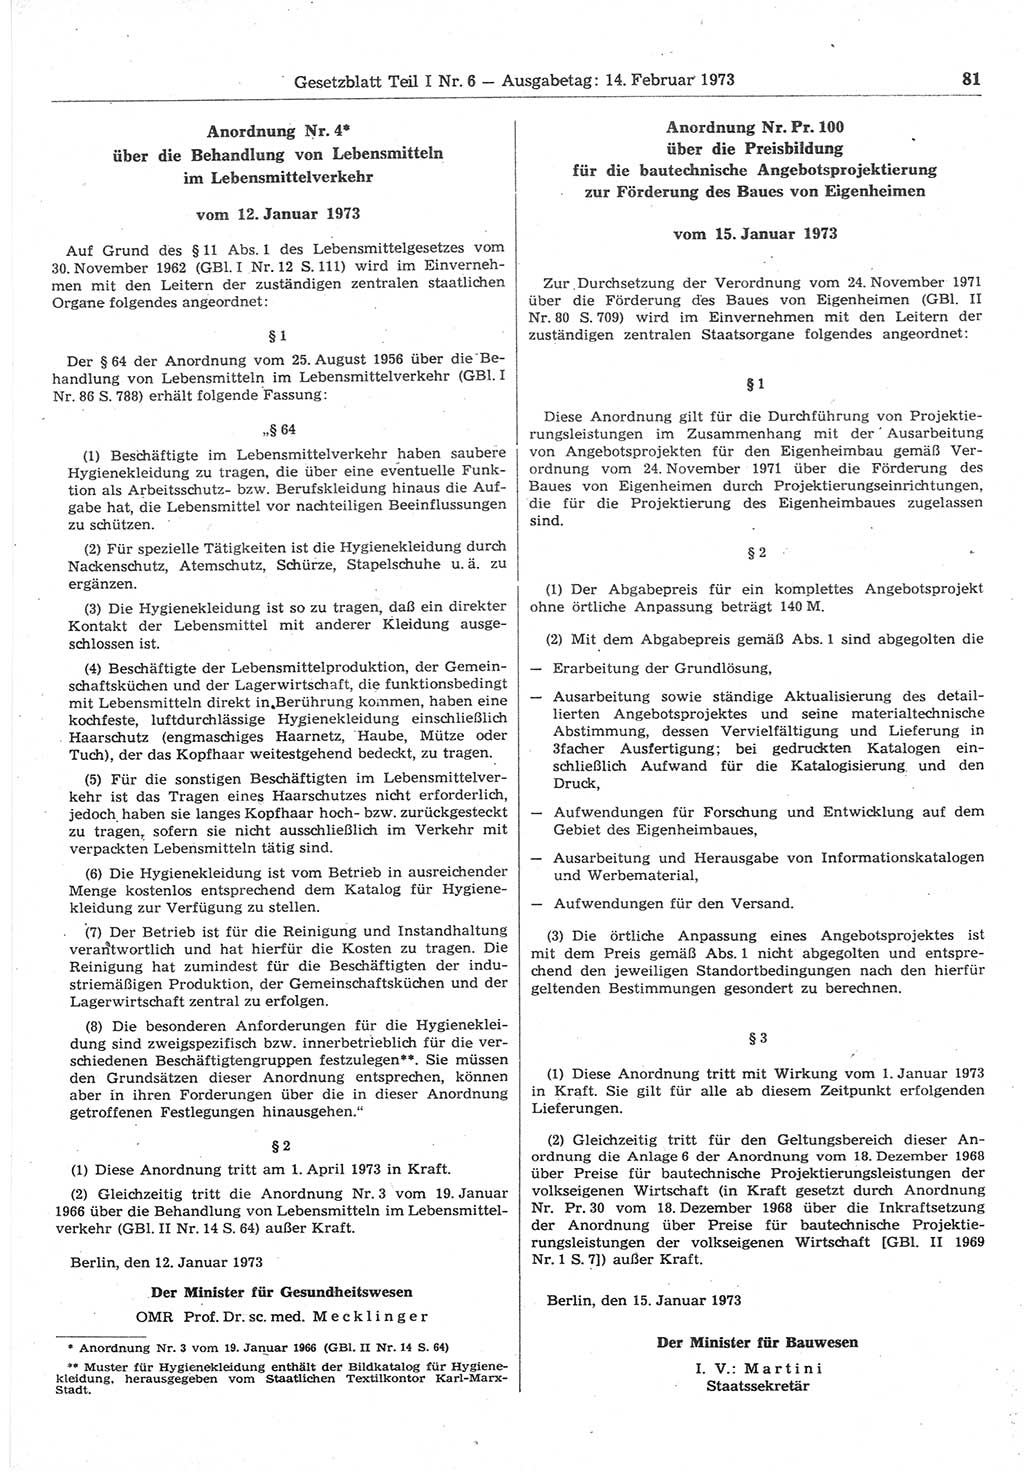 Gesetzblatt (GBl.) der Deutschen Demokratischen Republik (DDR) Teil Ⅰ 1973, Seite 81 (GBl. DDR Ⅰ 1973, S. 81)